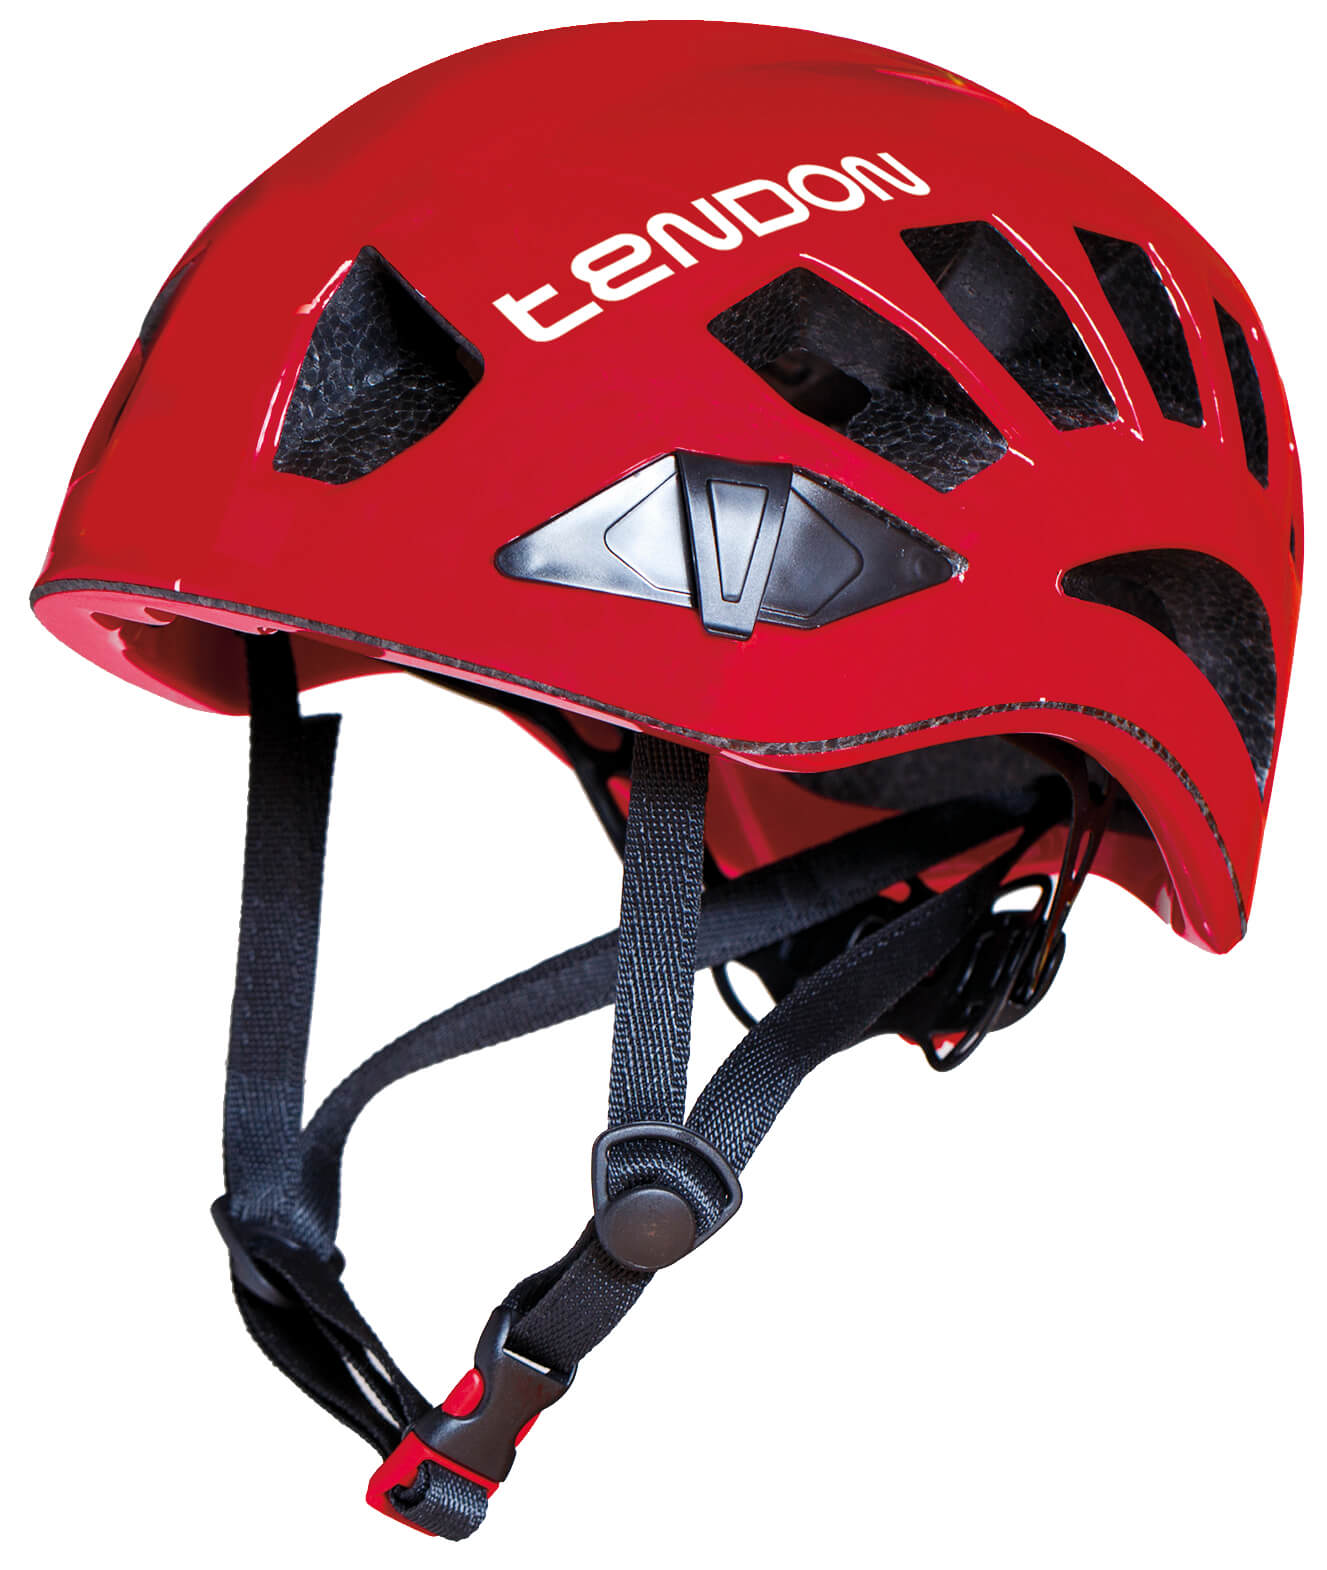 TENDON helmet Orbix - Red